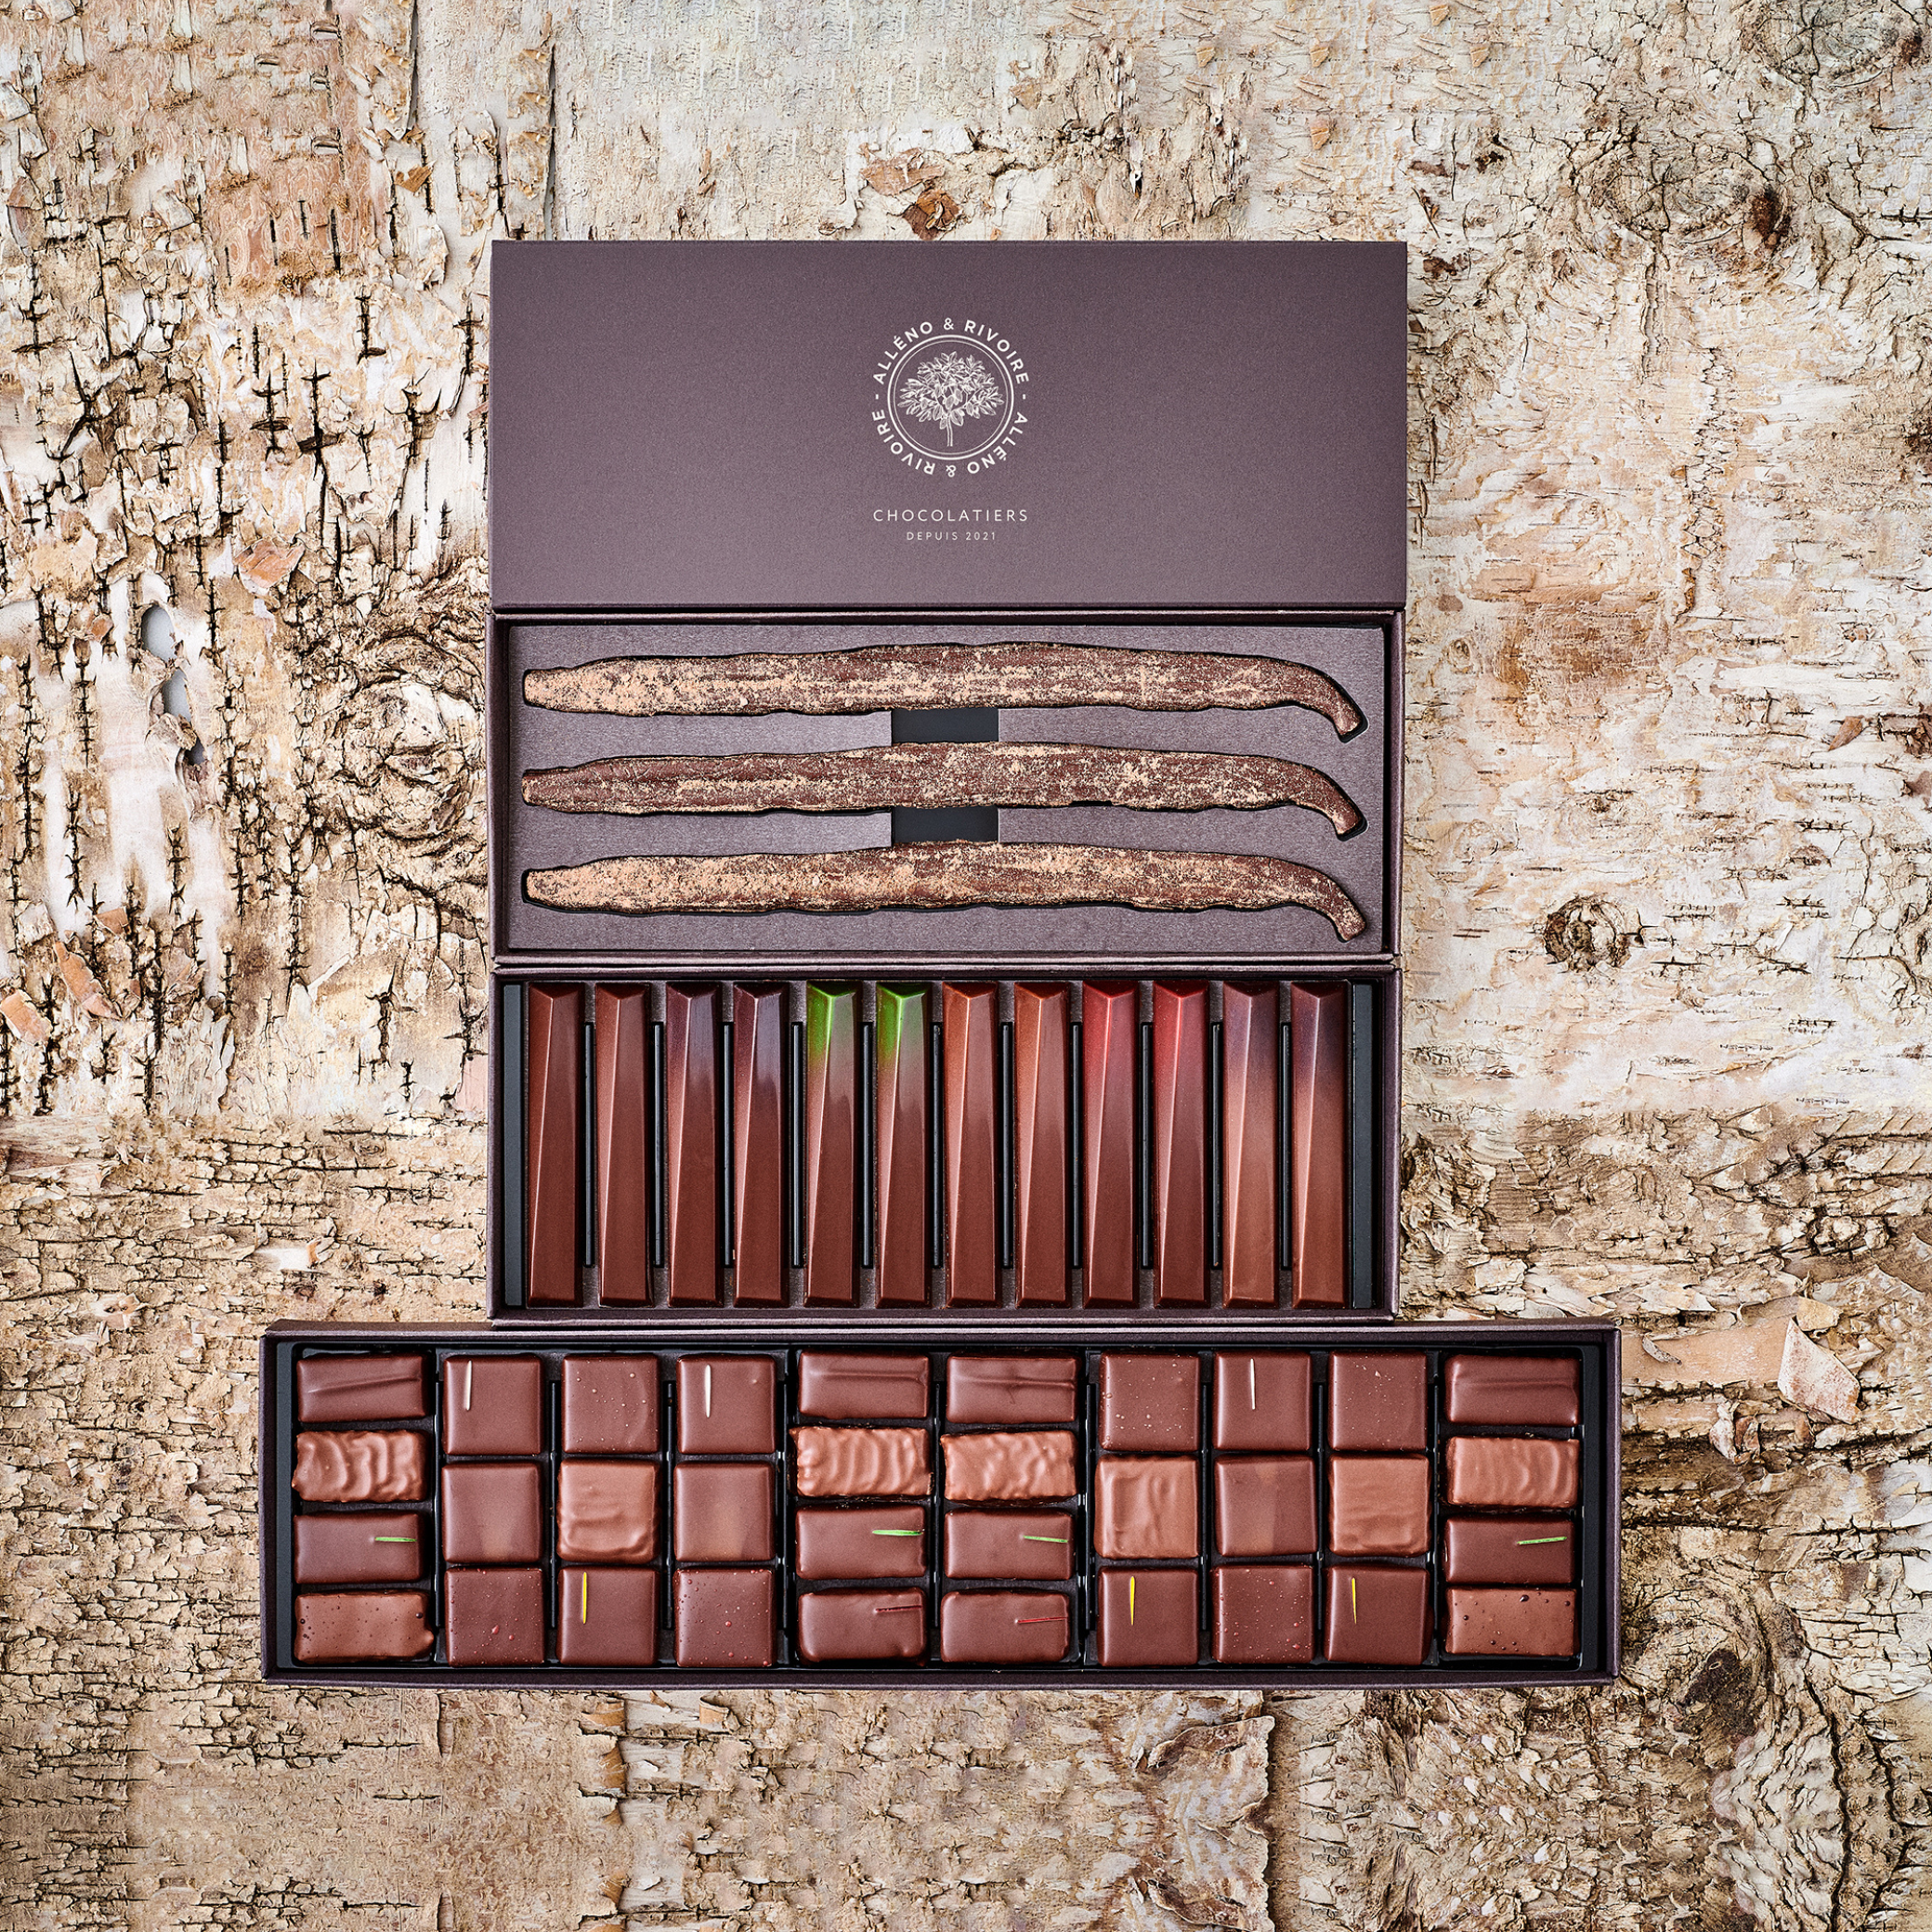 Cadeau client coffret chocolats luxe sur mesure - Fidélisez